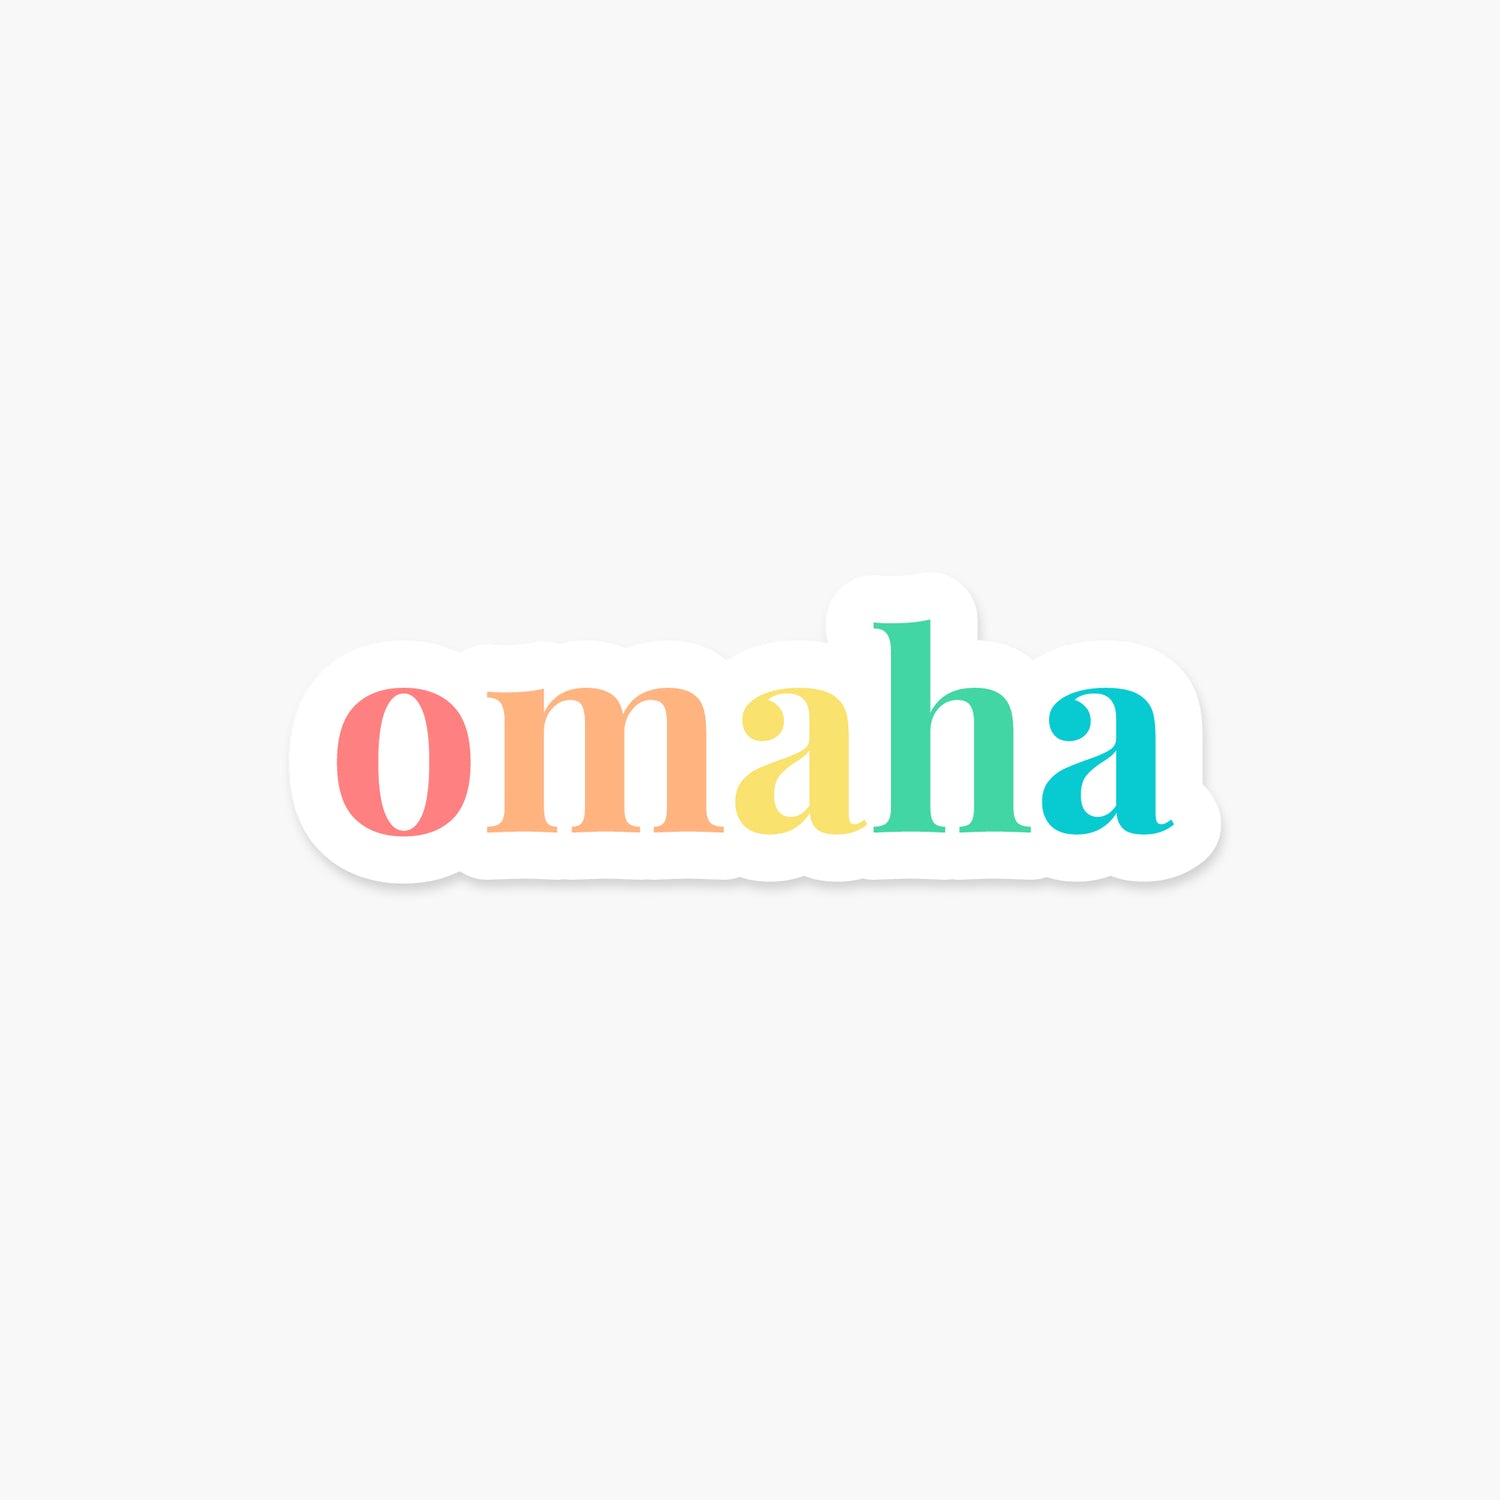 Omaha, Nebraska - Everyday Sticker | Footnotes Paper